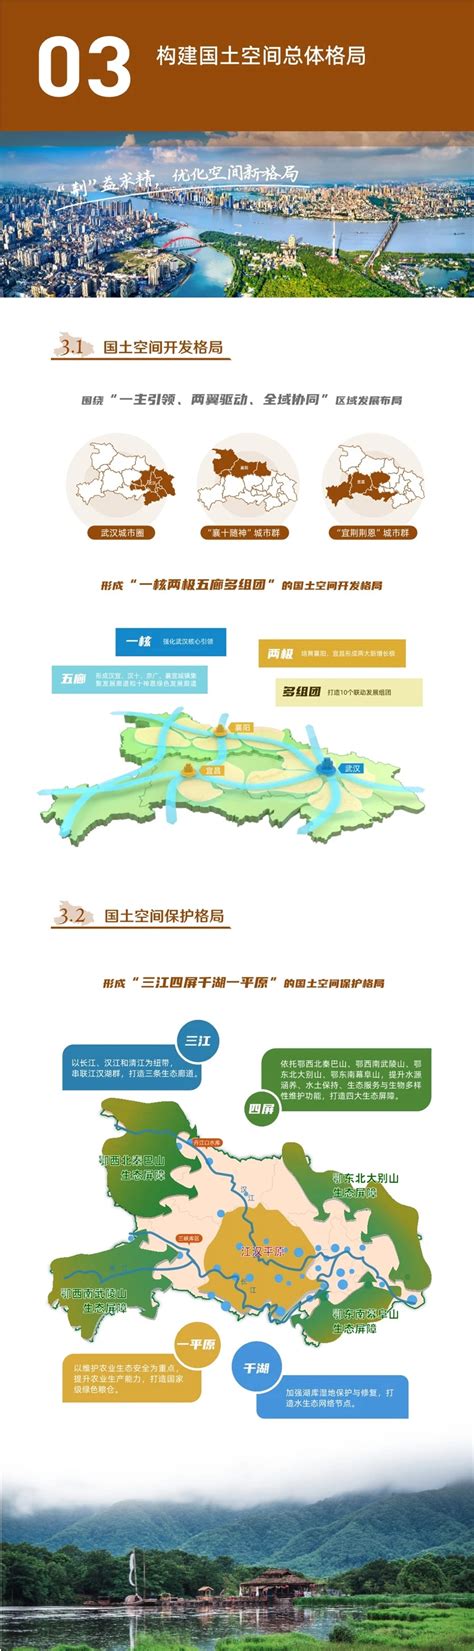 ⊙【公示】《湖北省国土空间规划（2021—2035年）》公示进行中_来源